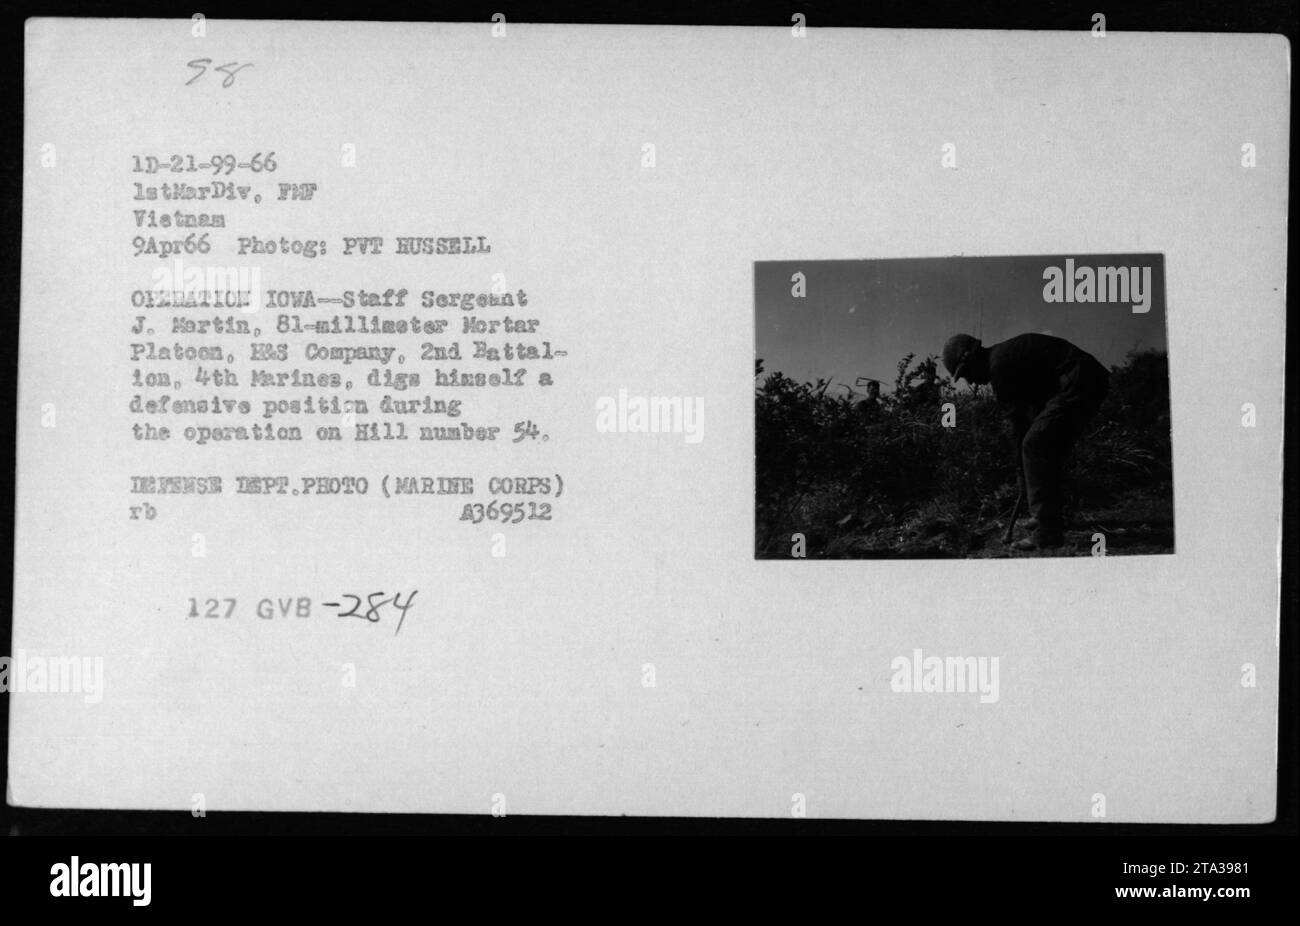 Staff Sergeant J. Kartin, 81-Millimeter-Mörserzug, E&S Company, 2. Bataillon, 4. Marines, er begräbt eine Verteidigungsposition auf Hill Nummer 54 während der Operation Iowa am 9. April 1966. Dieses Foto zeigt einen Moment von Patrouillen der 1. Marine Division in Vietnam." Stockfoto